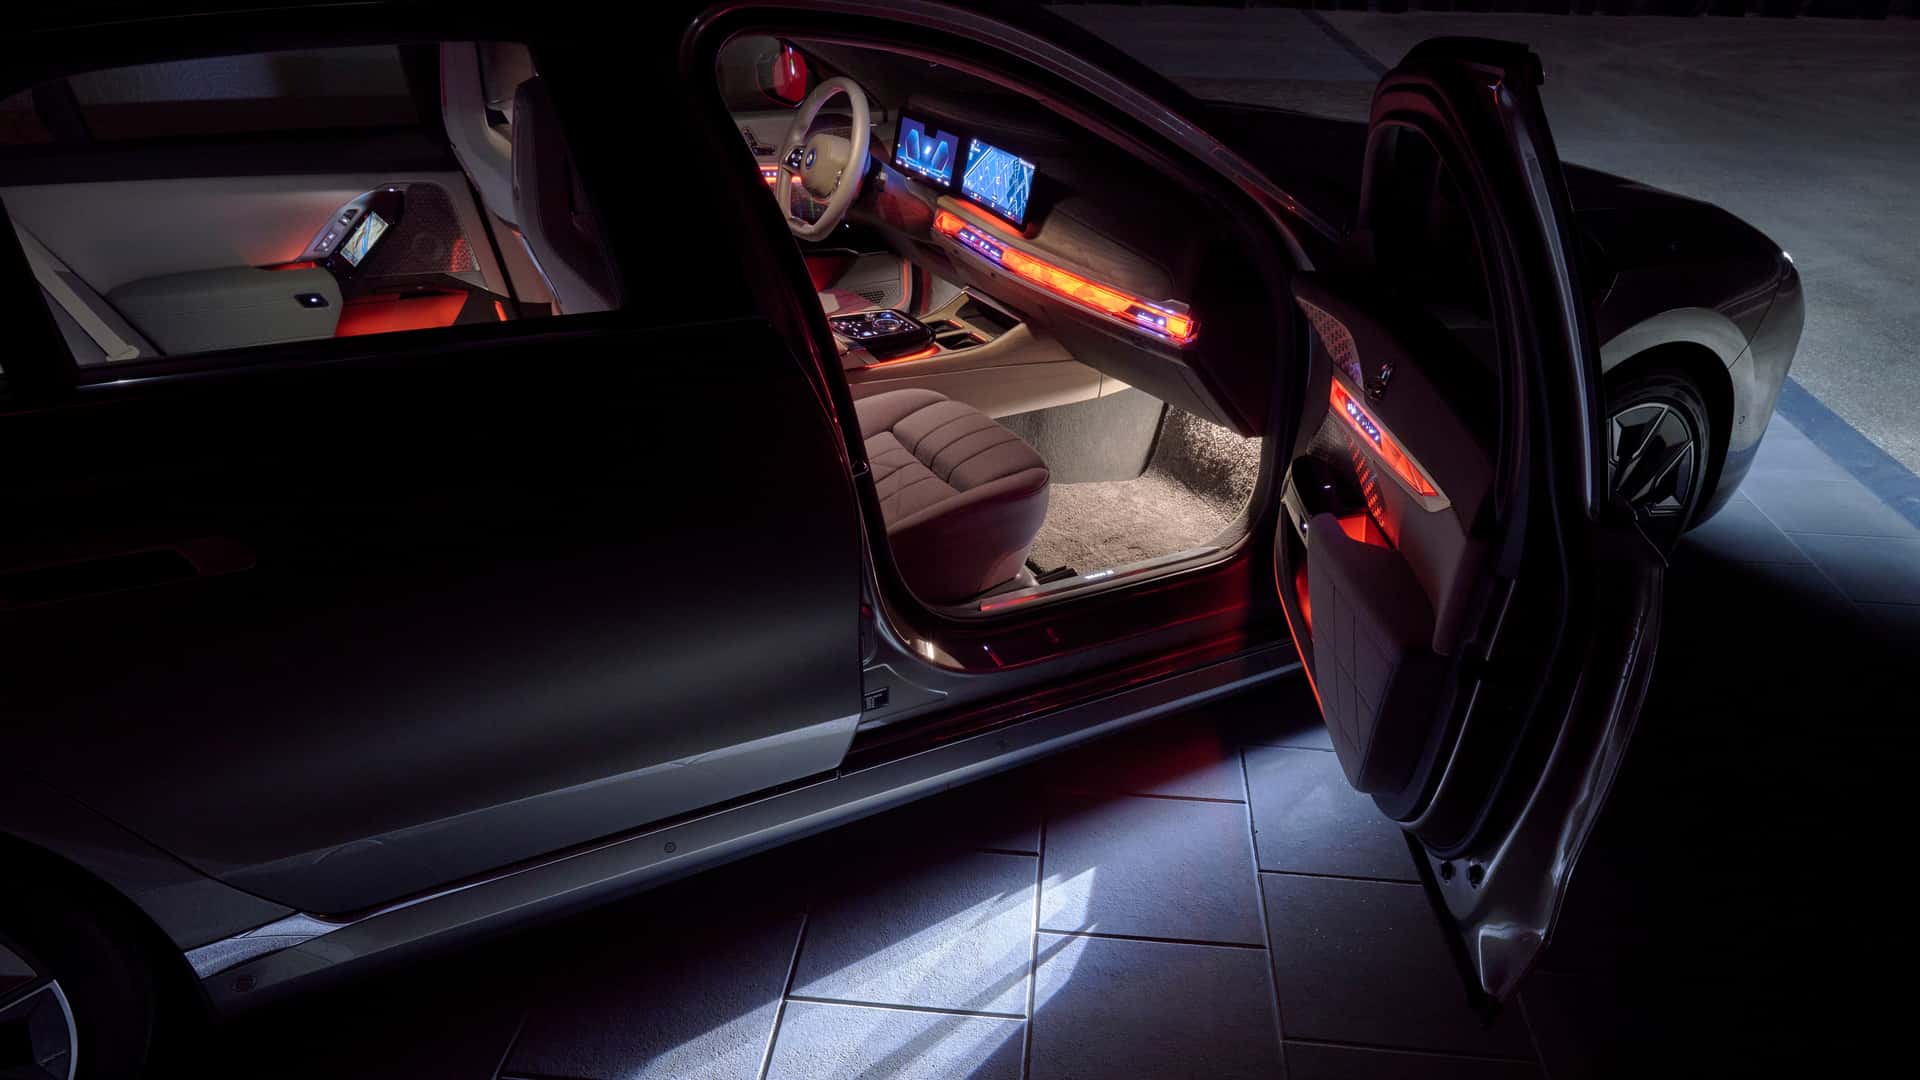 Đây là cách BMW thử đèn xe mới, phức tạp và đa dạng hơn tưởng tượng - Ảnh 2.